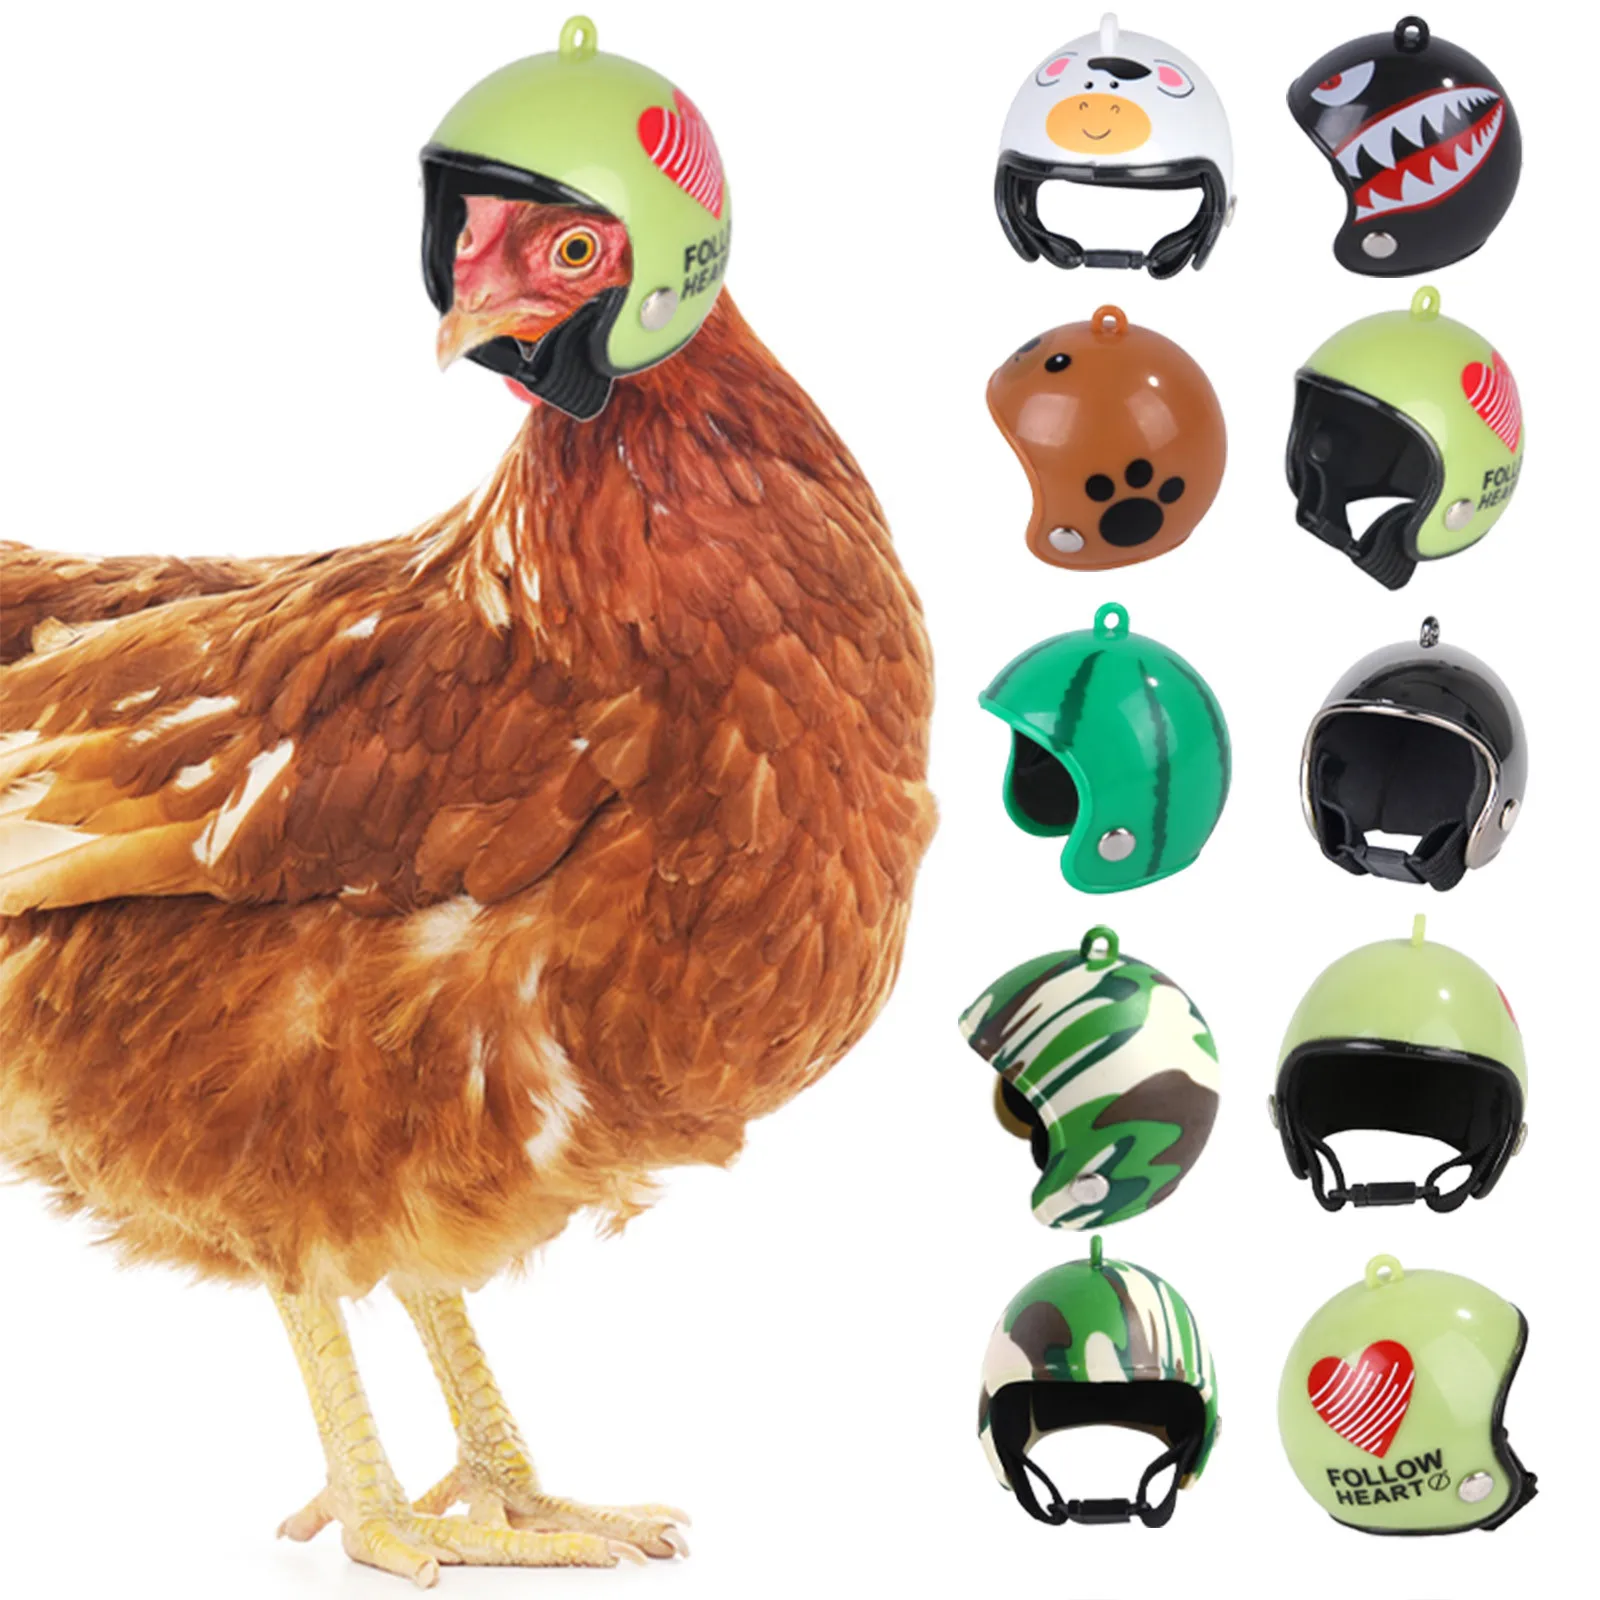 

1 шт. Забавный защитный шлем для курицы аксессуары для домашних животных Забавный защитный шлем для курицы жесткий головной убор для птицы